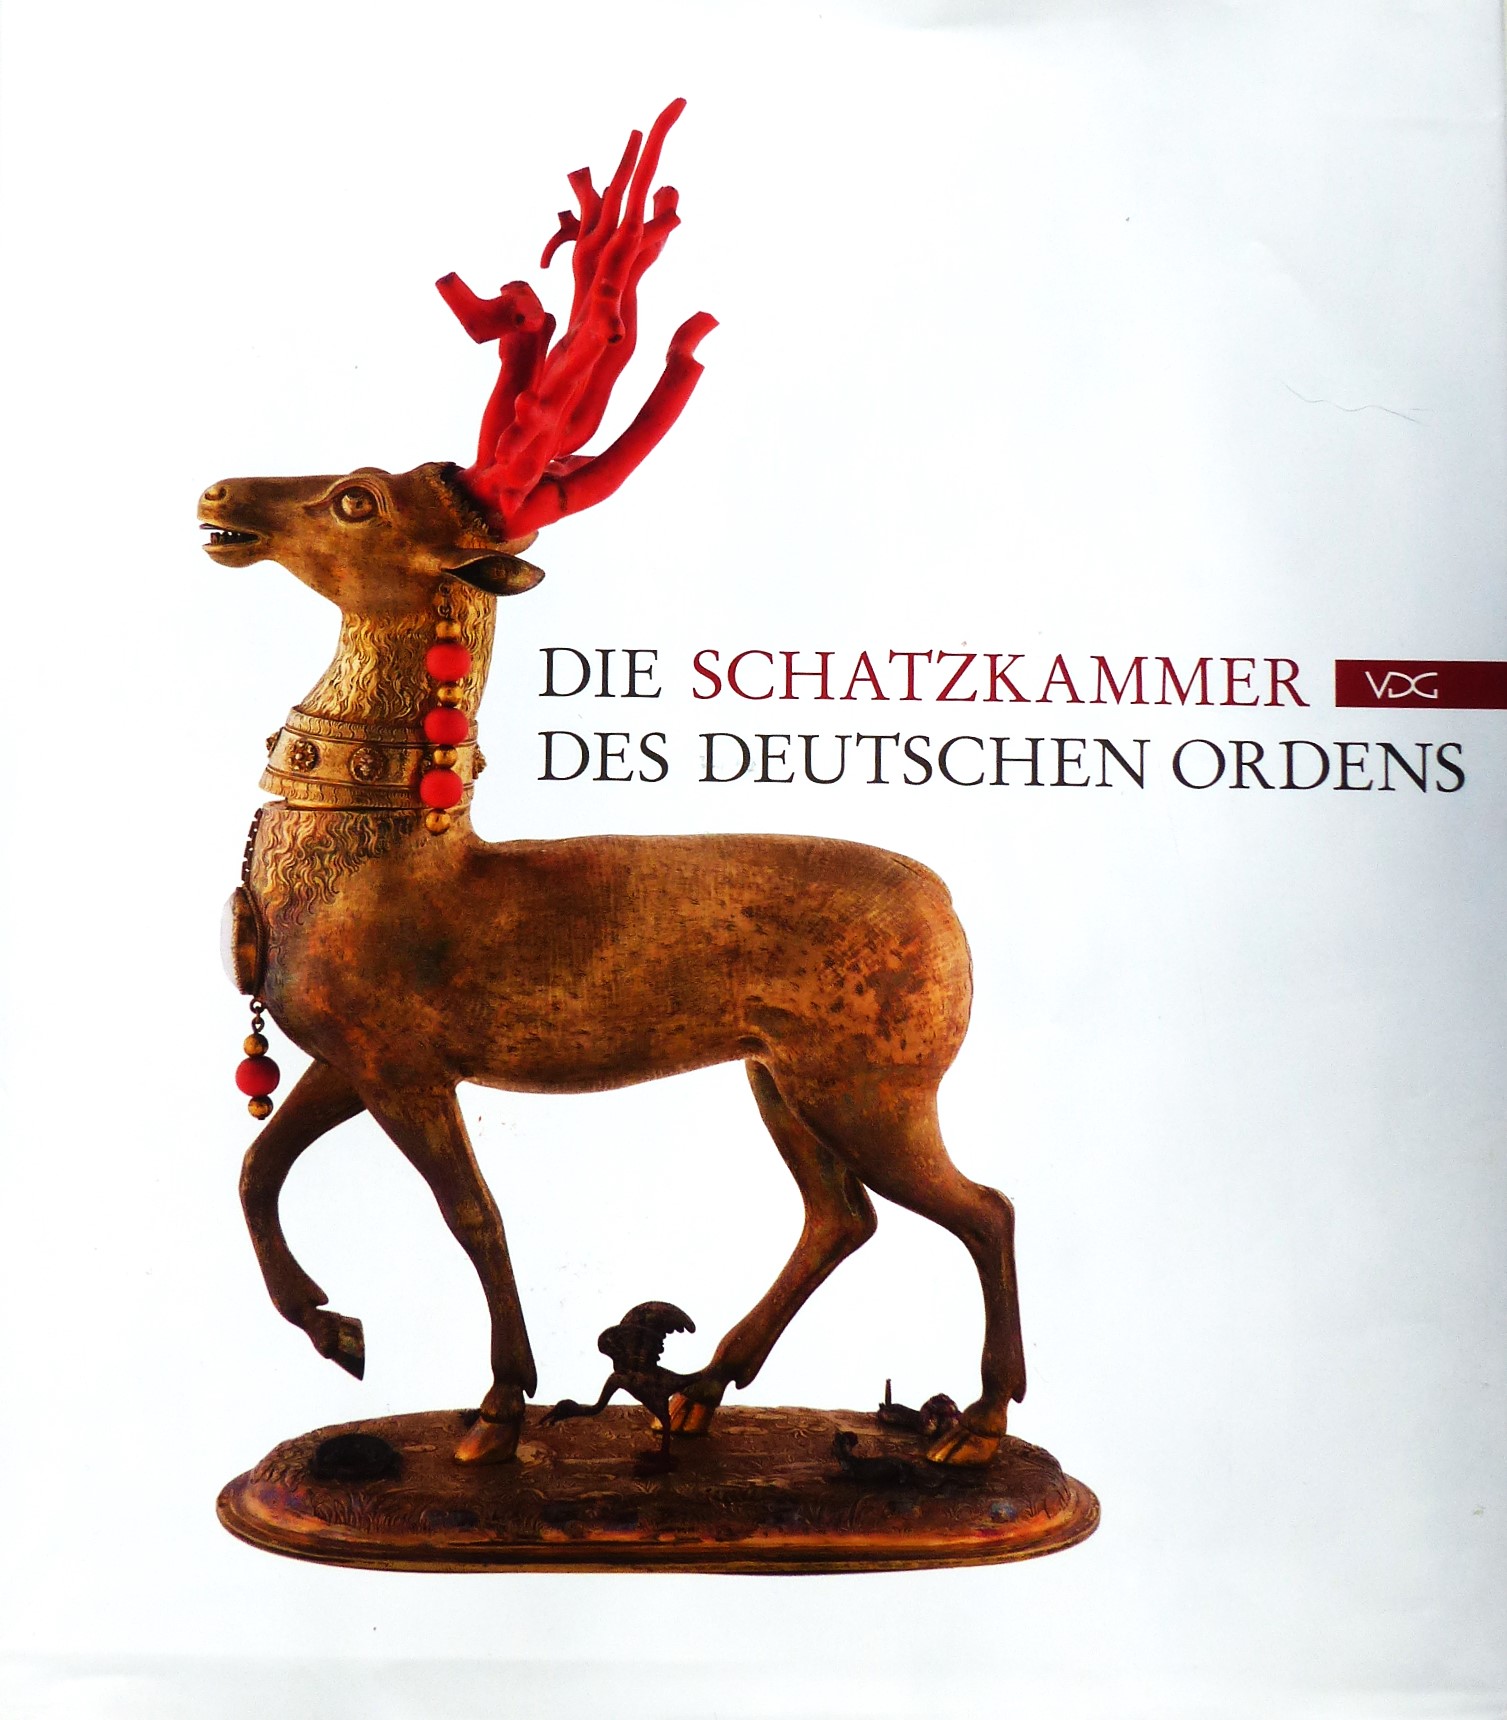 Das Bild zeigt das Cover des Katalogs: "Die Schatzkammer des Deutschen Ordens" auf dem eine Statue eines Hirsches abgebildet ist.